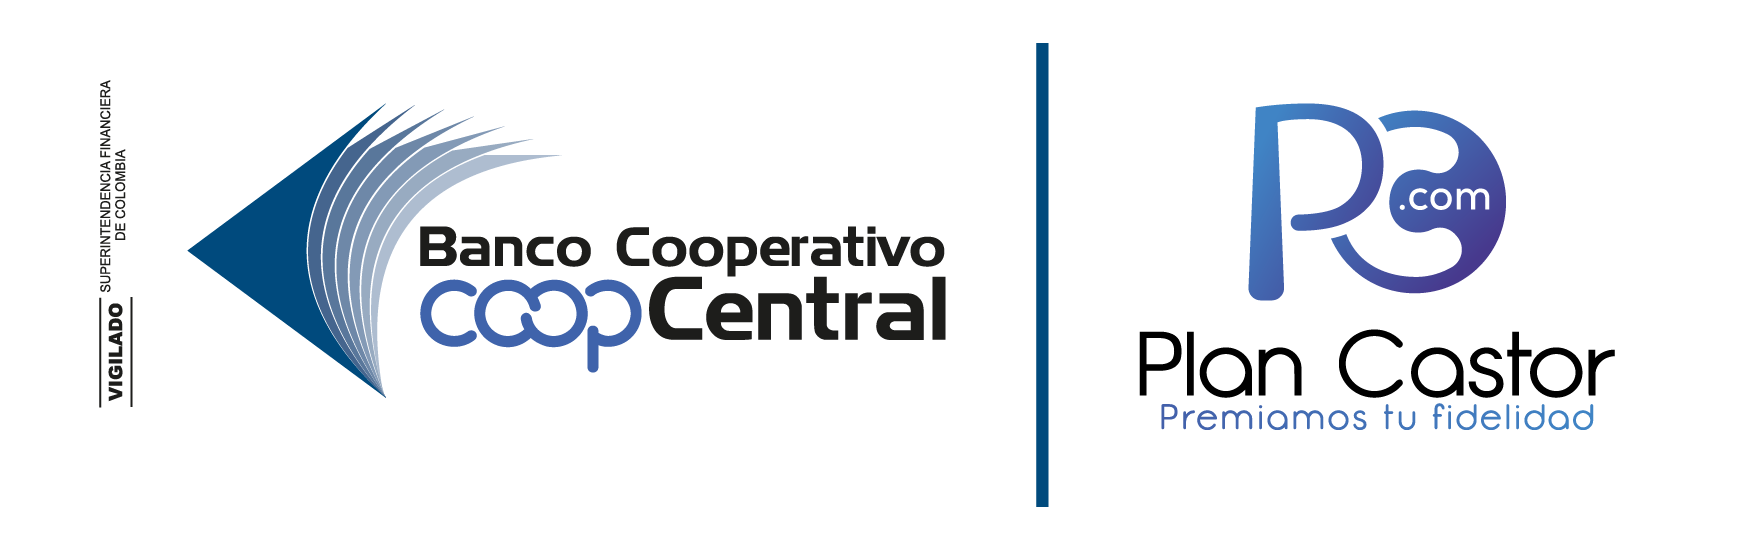 Plan Castor Banco Cooperativo Coopcentral - Link al home